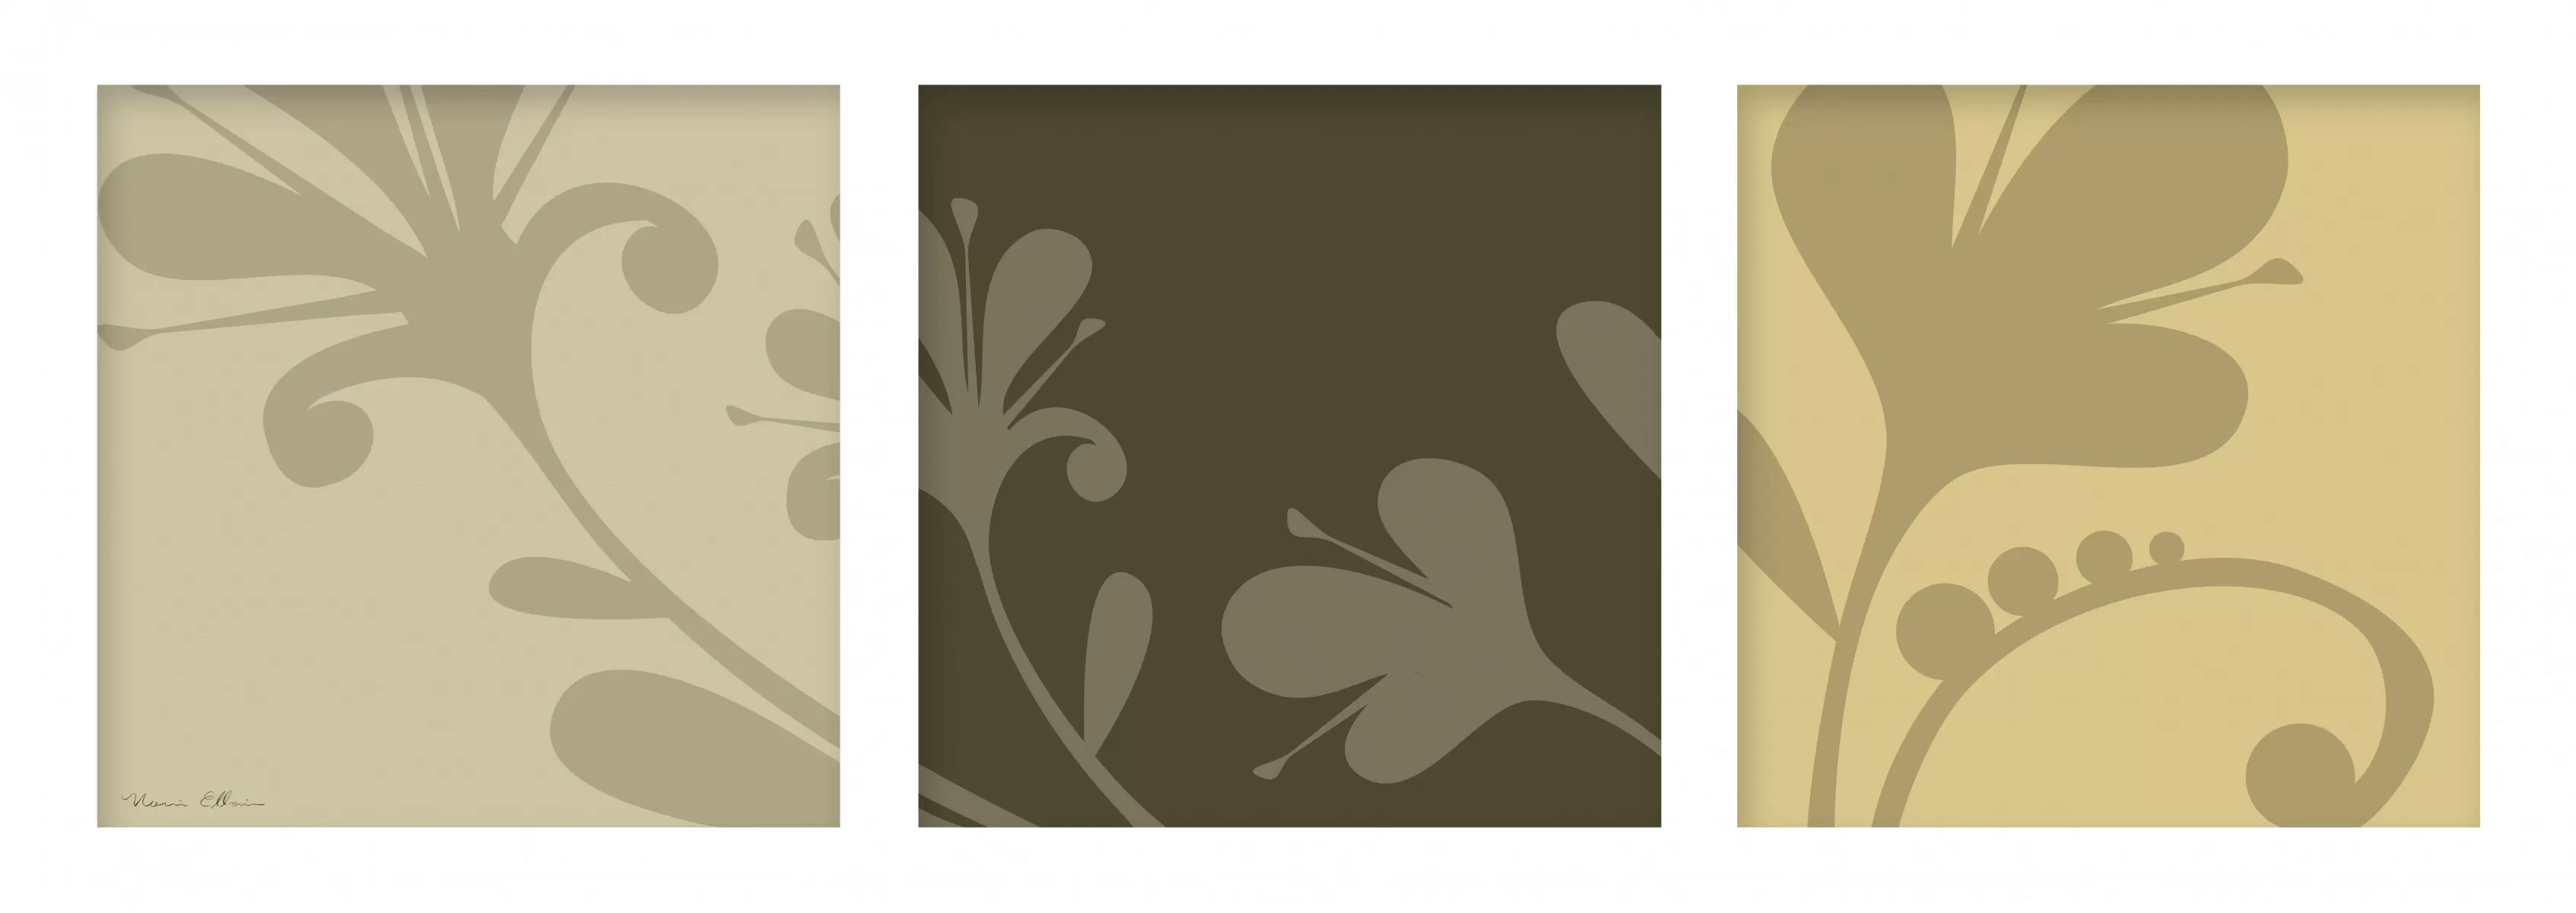 פרחי סתיו - נעמי עיצובים - תמונות לסלון רגוע ונעים תמונות בחלקים  - מק''ט: 160732